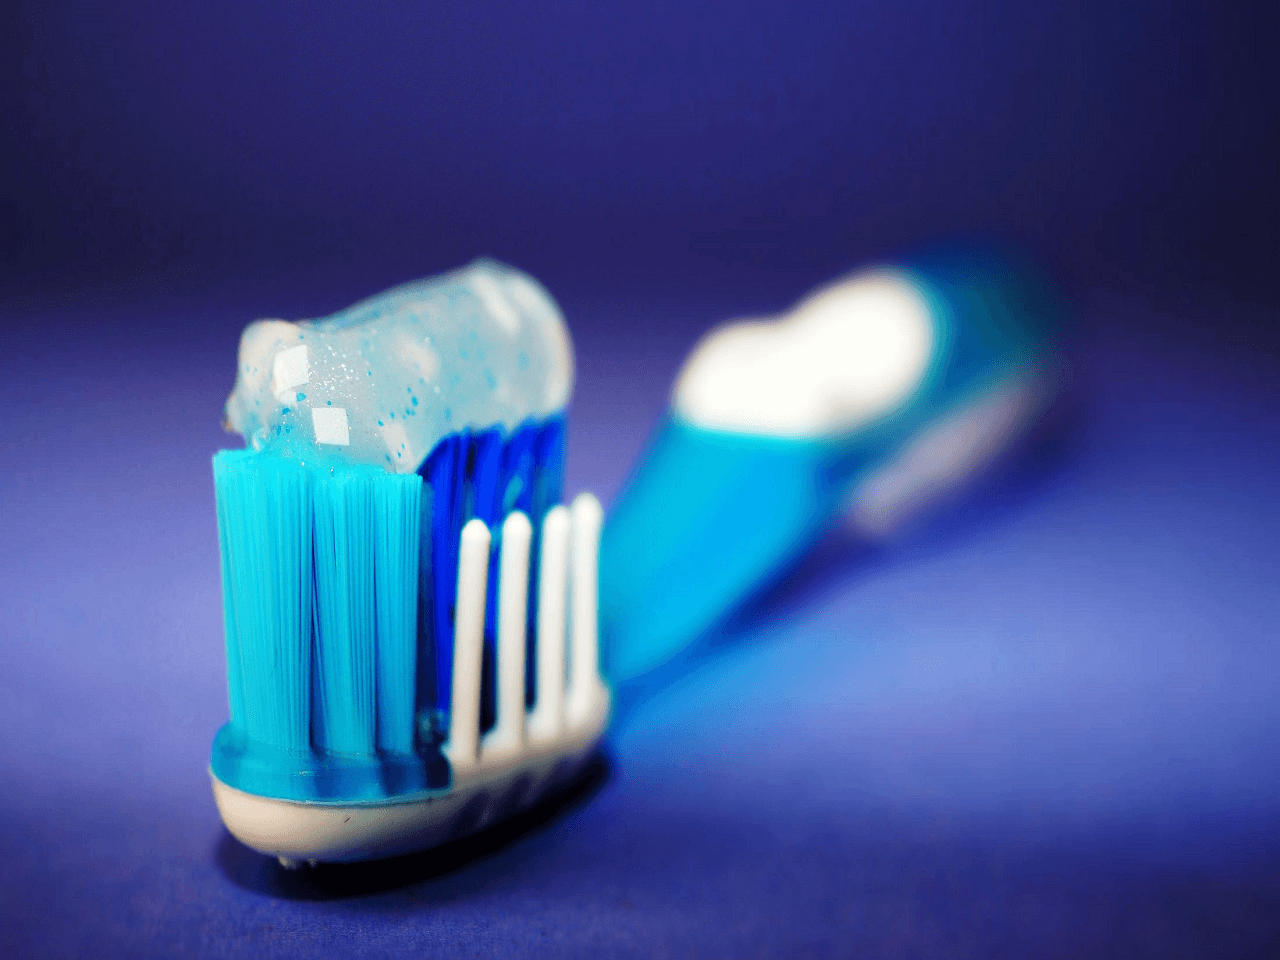 Diş Fırçaları İthalatına Korunma Önlemleri Uzatma Soruşturması Açıldı